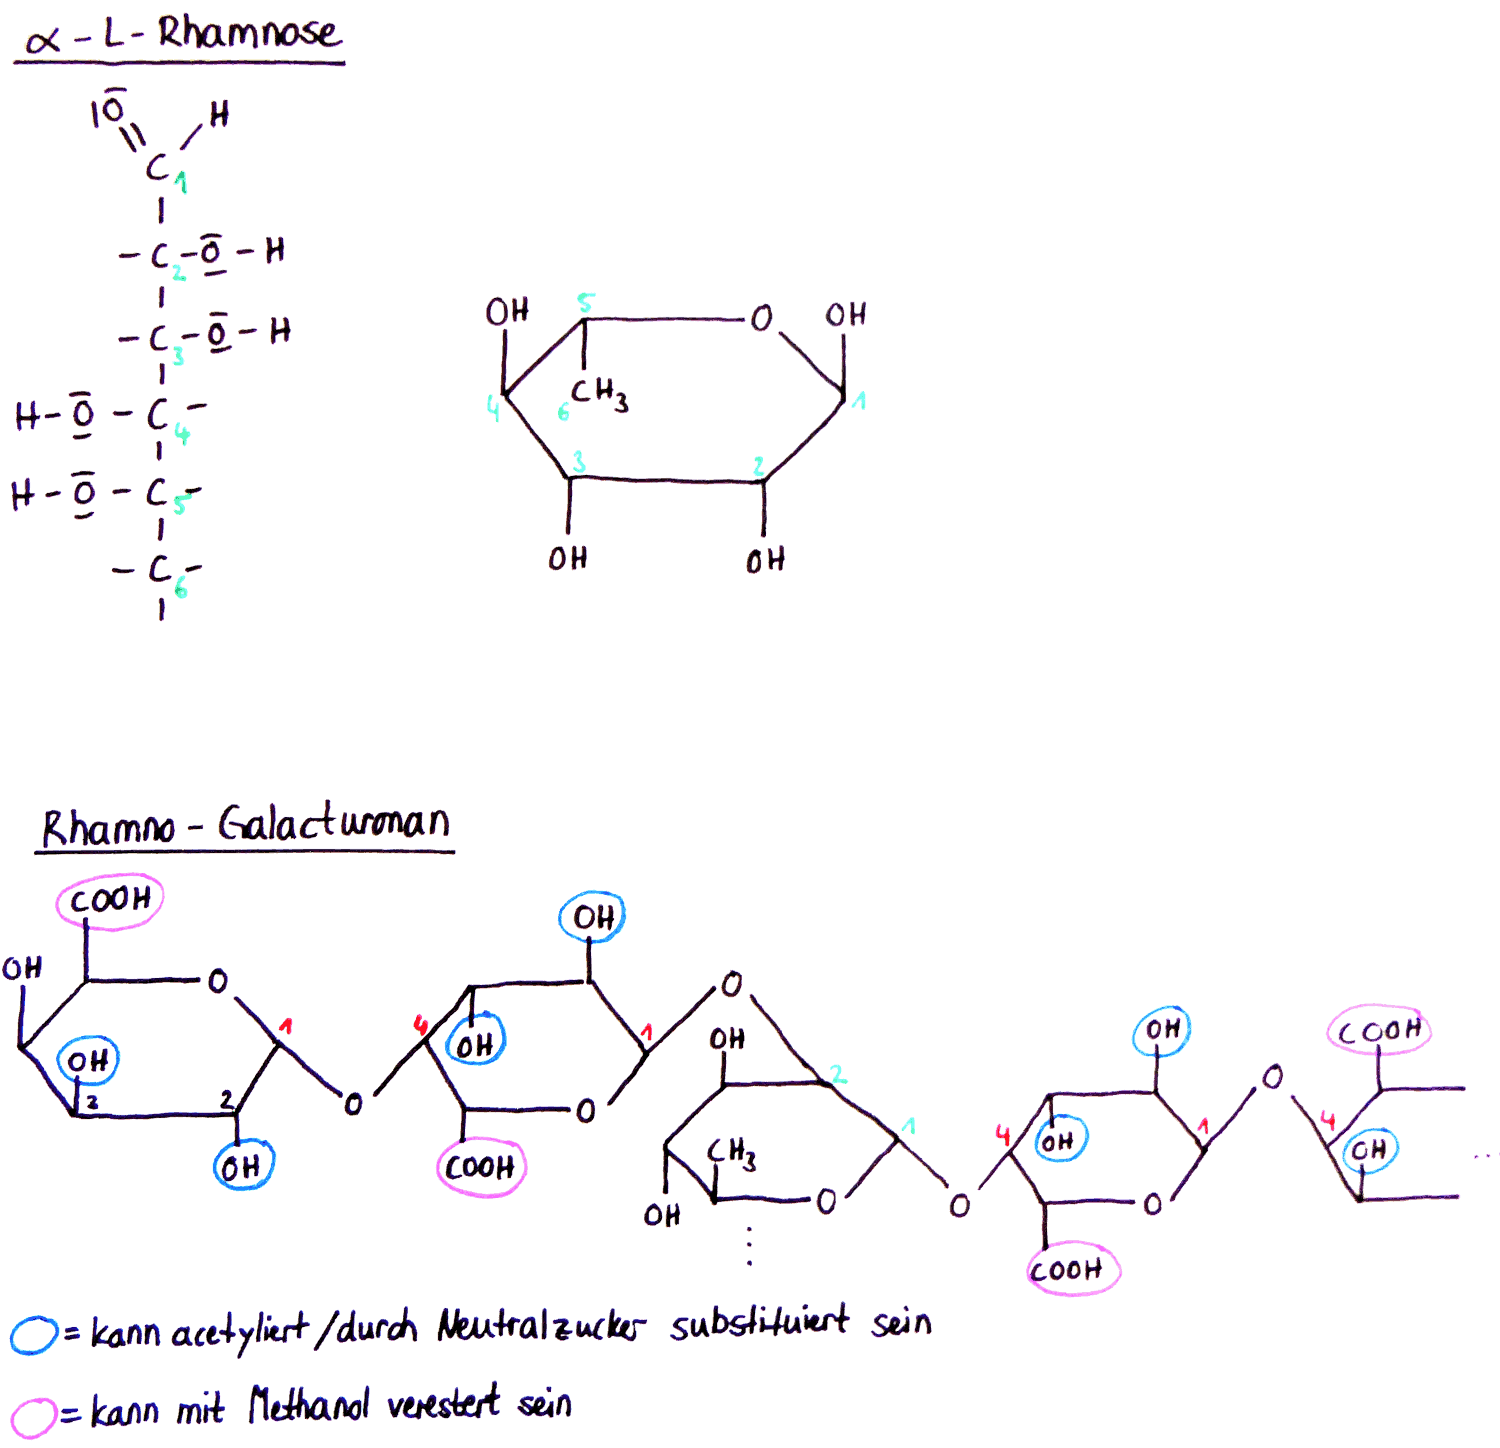 α-L-Rhamnose